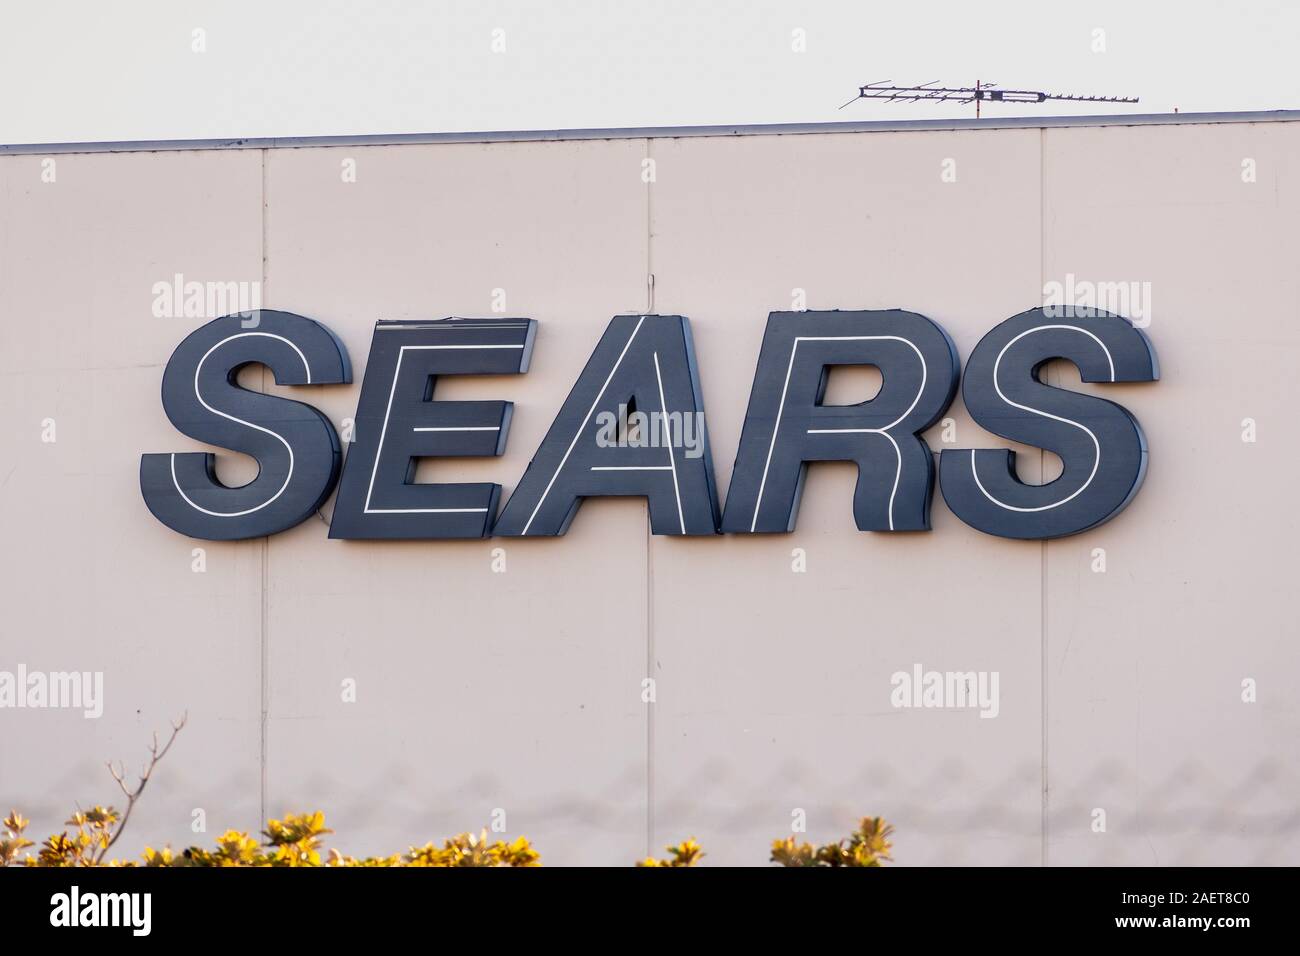 25 Aug, 2019 Pleasanton / CA / USA - Sears logotipo en la fachada de uno de sus grandes almacenes; varias tiendas Sears están programadas para cerrar como resultado Foto de stock